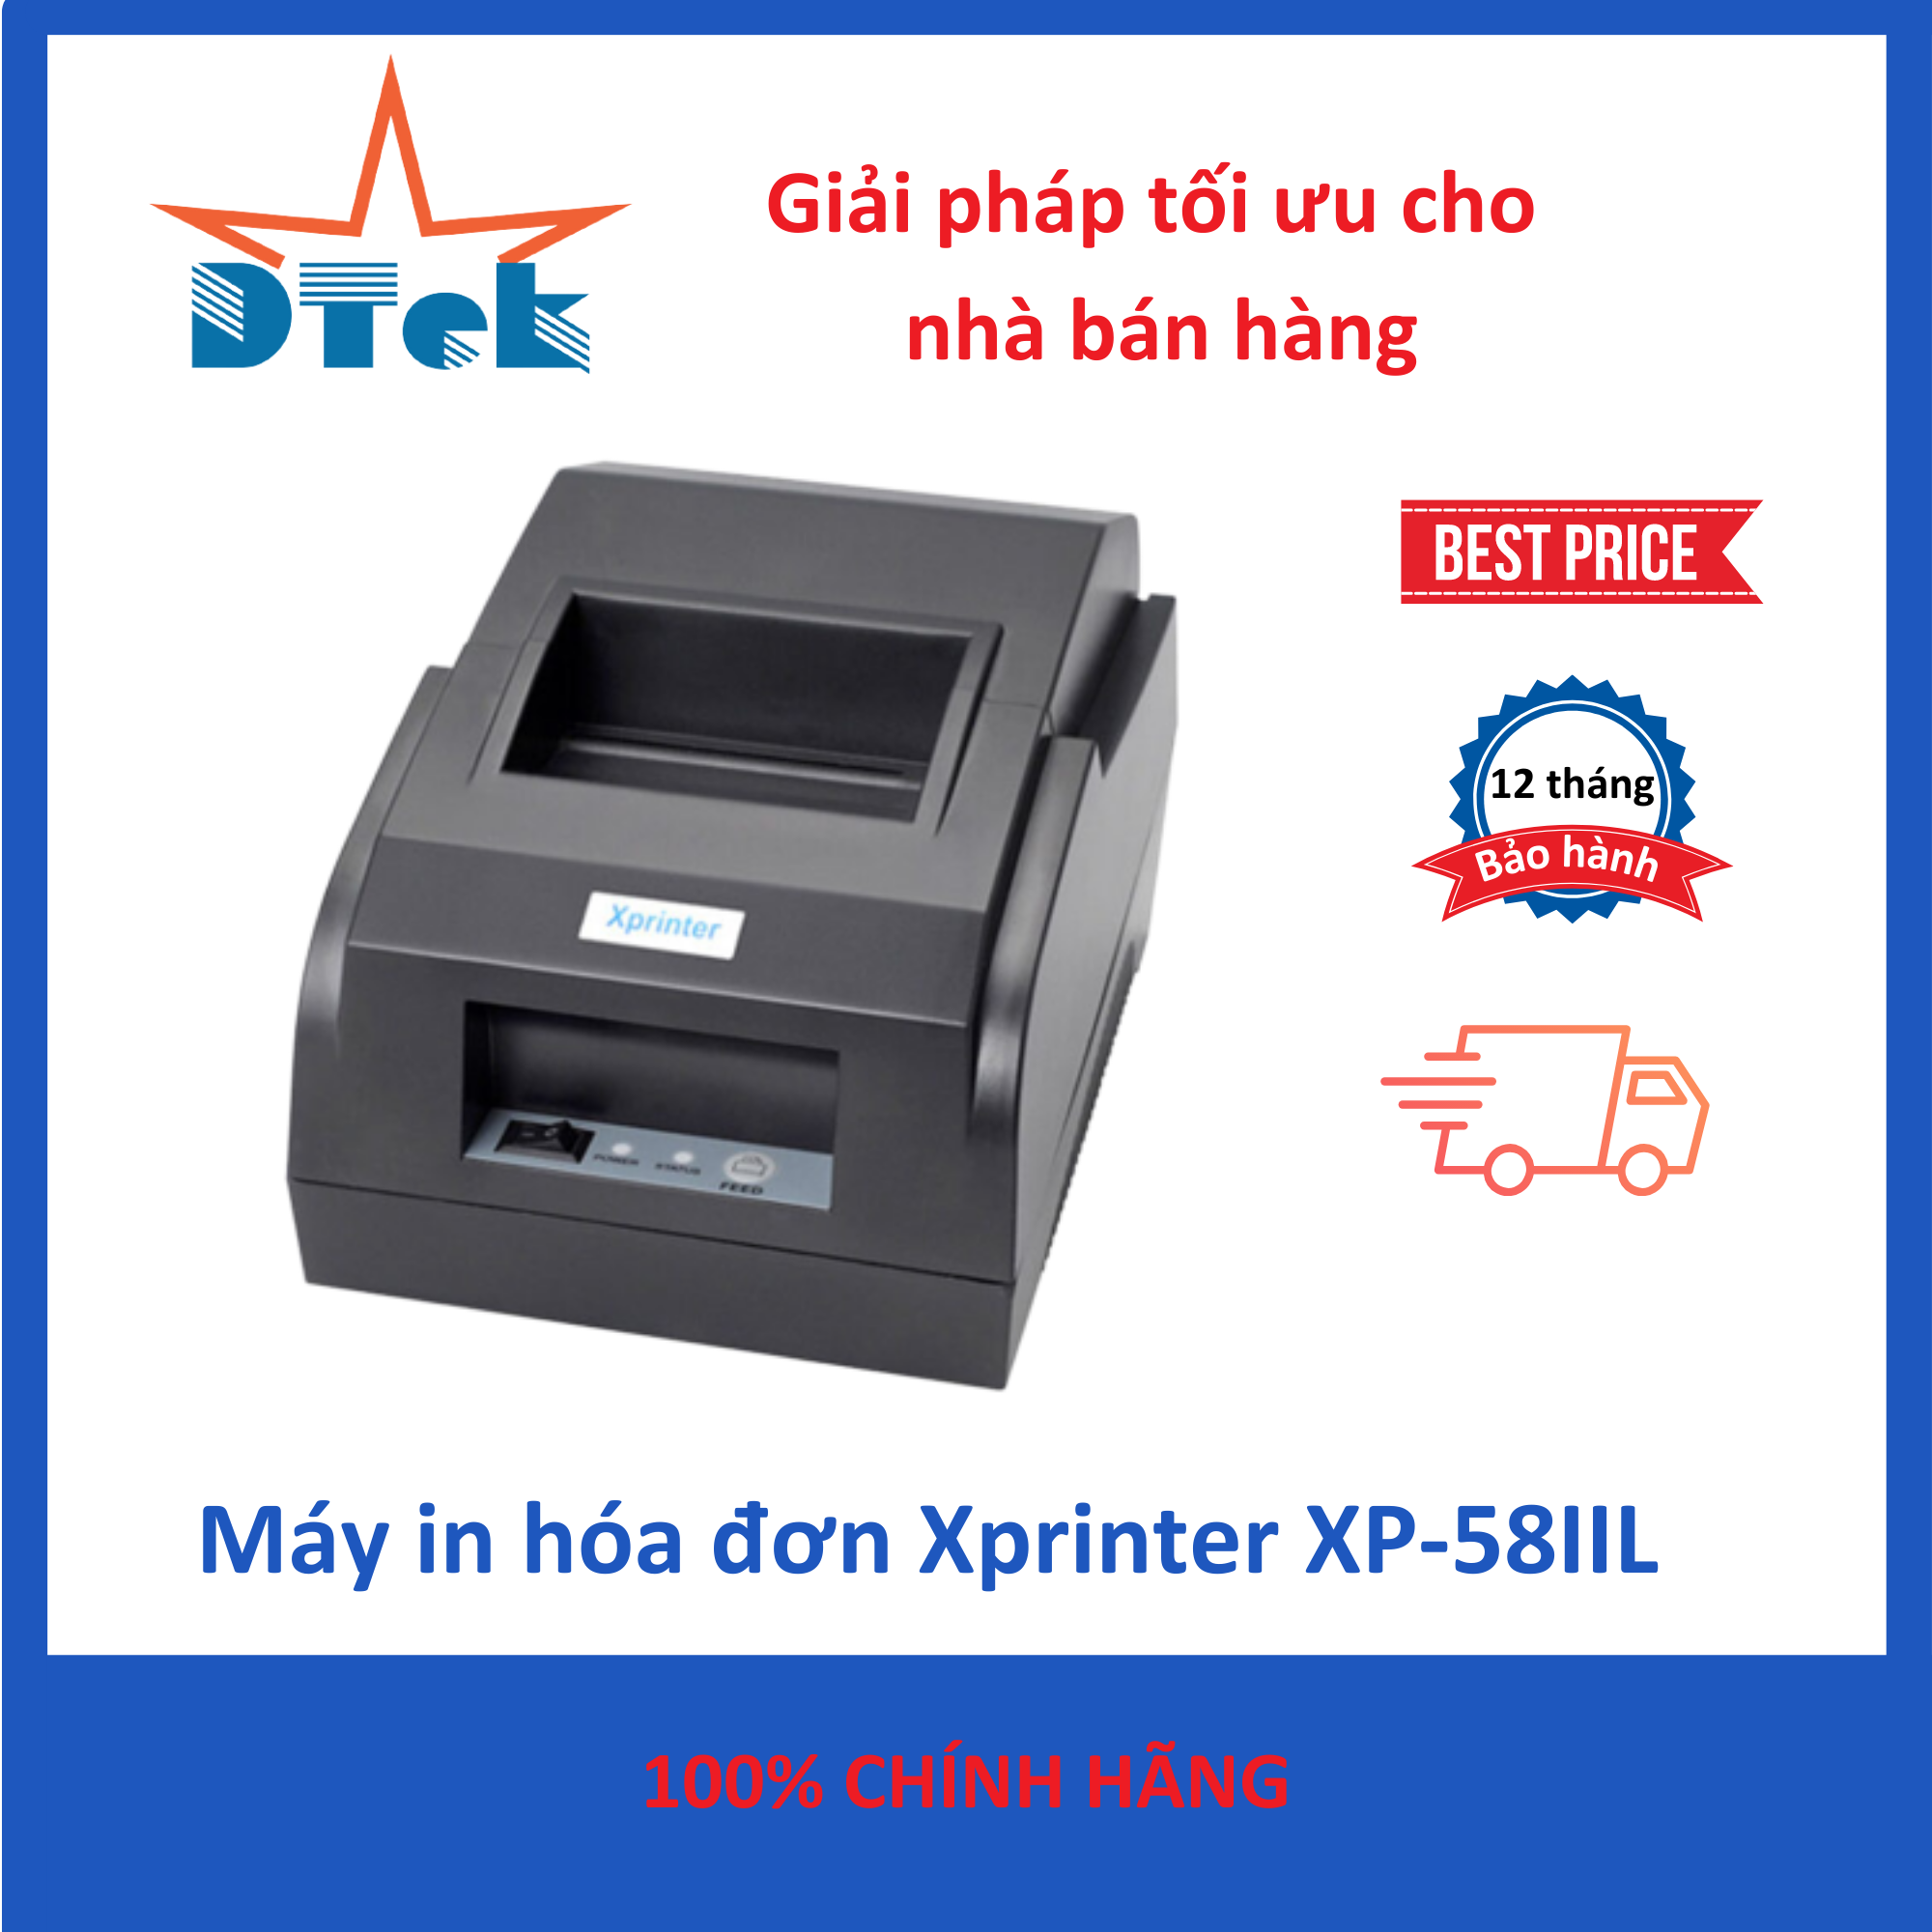 Máy in hóa đơn bán hàng Xprinter XP-58IIL Dtek